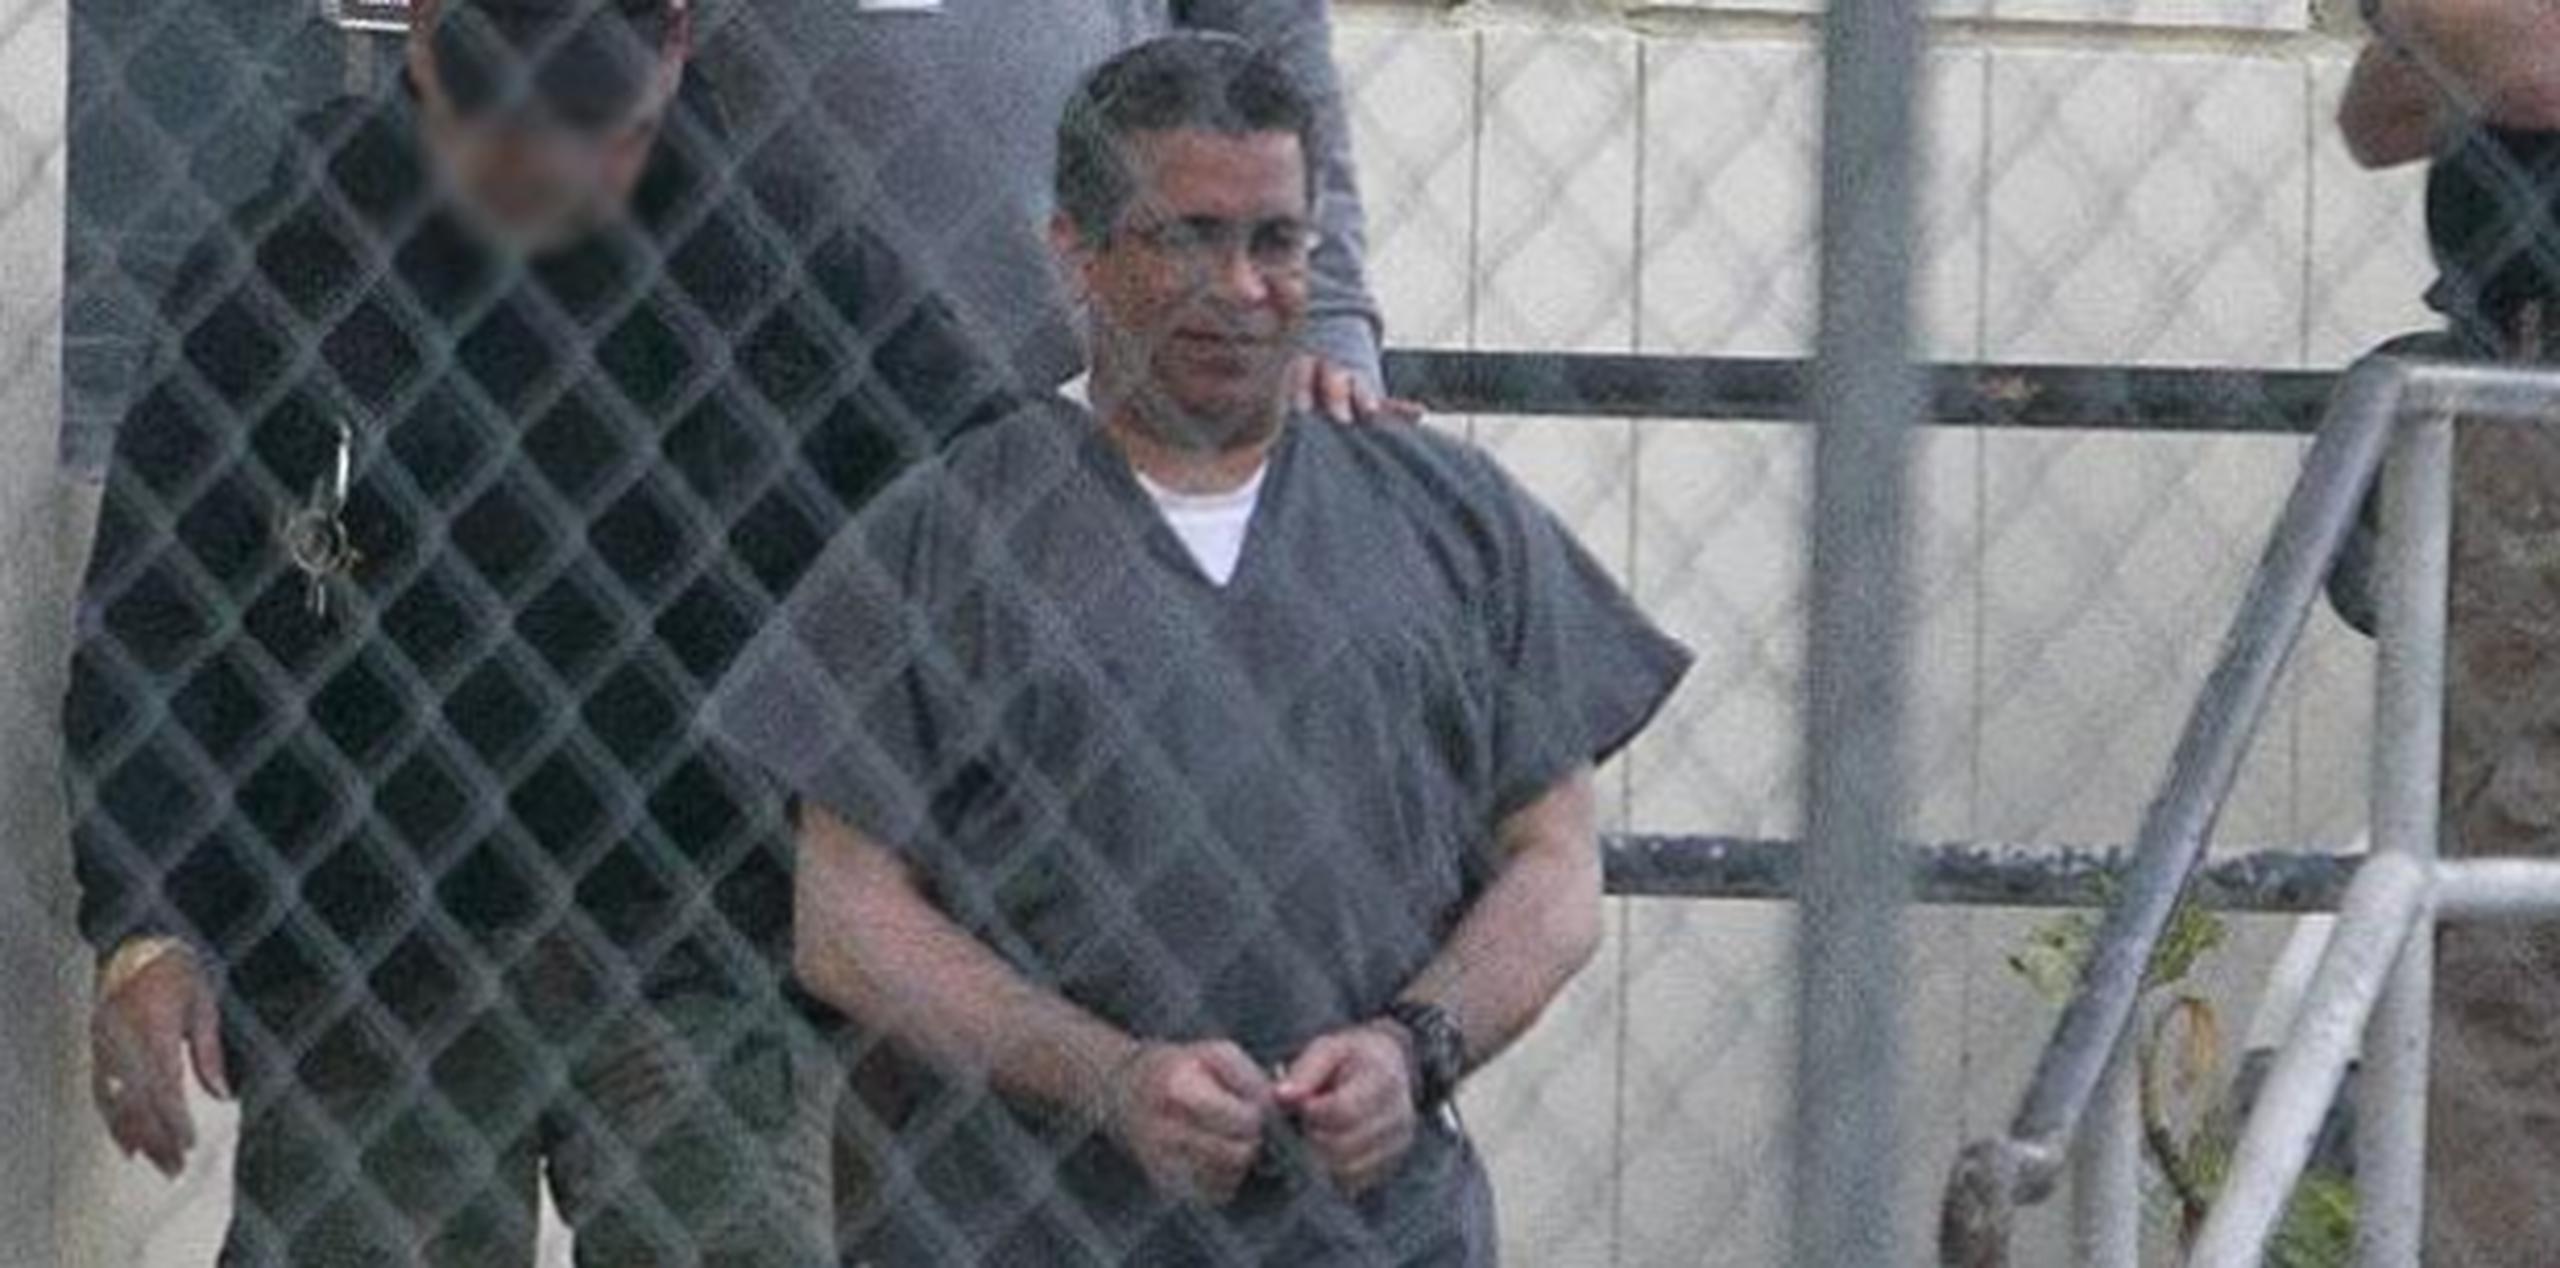 El 1 de febrero de 2013, Cordero Rosario hizo alegación de culpabilidad por posesión de pornografía infantil. (Archivo)